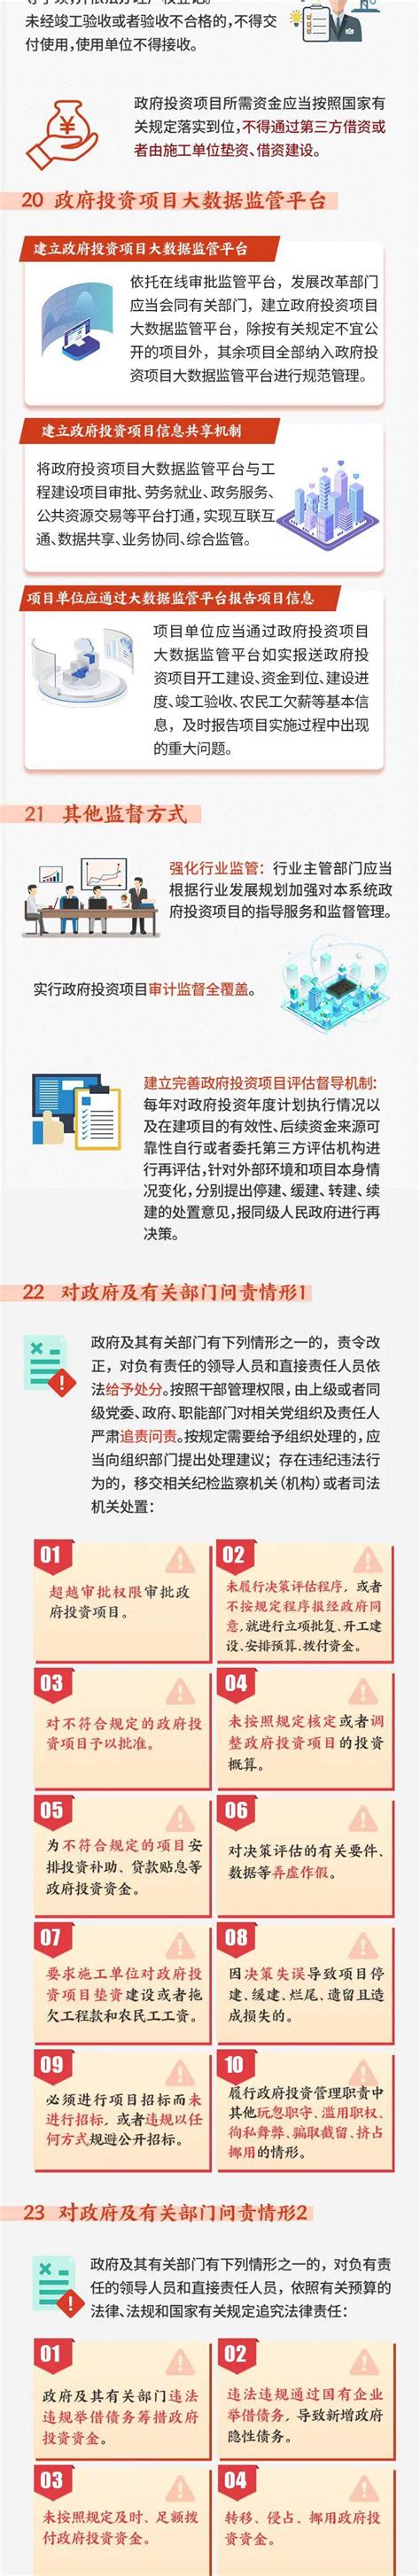 一图读懂《贵州省政府投资项目管理办法》